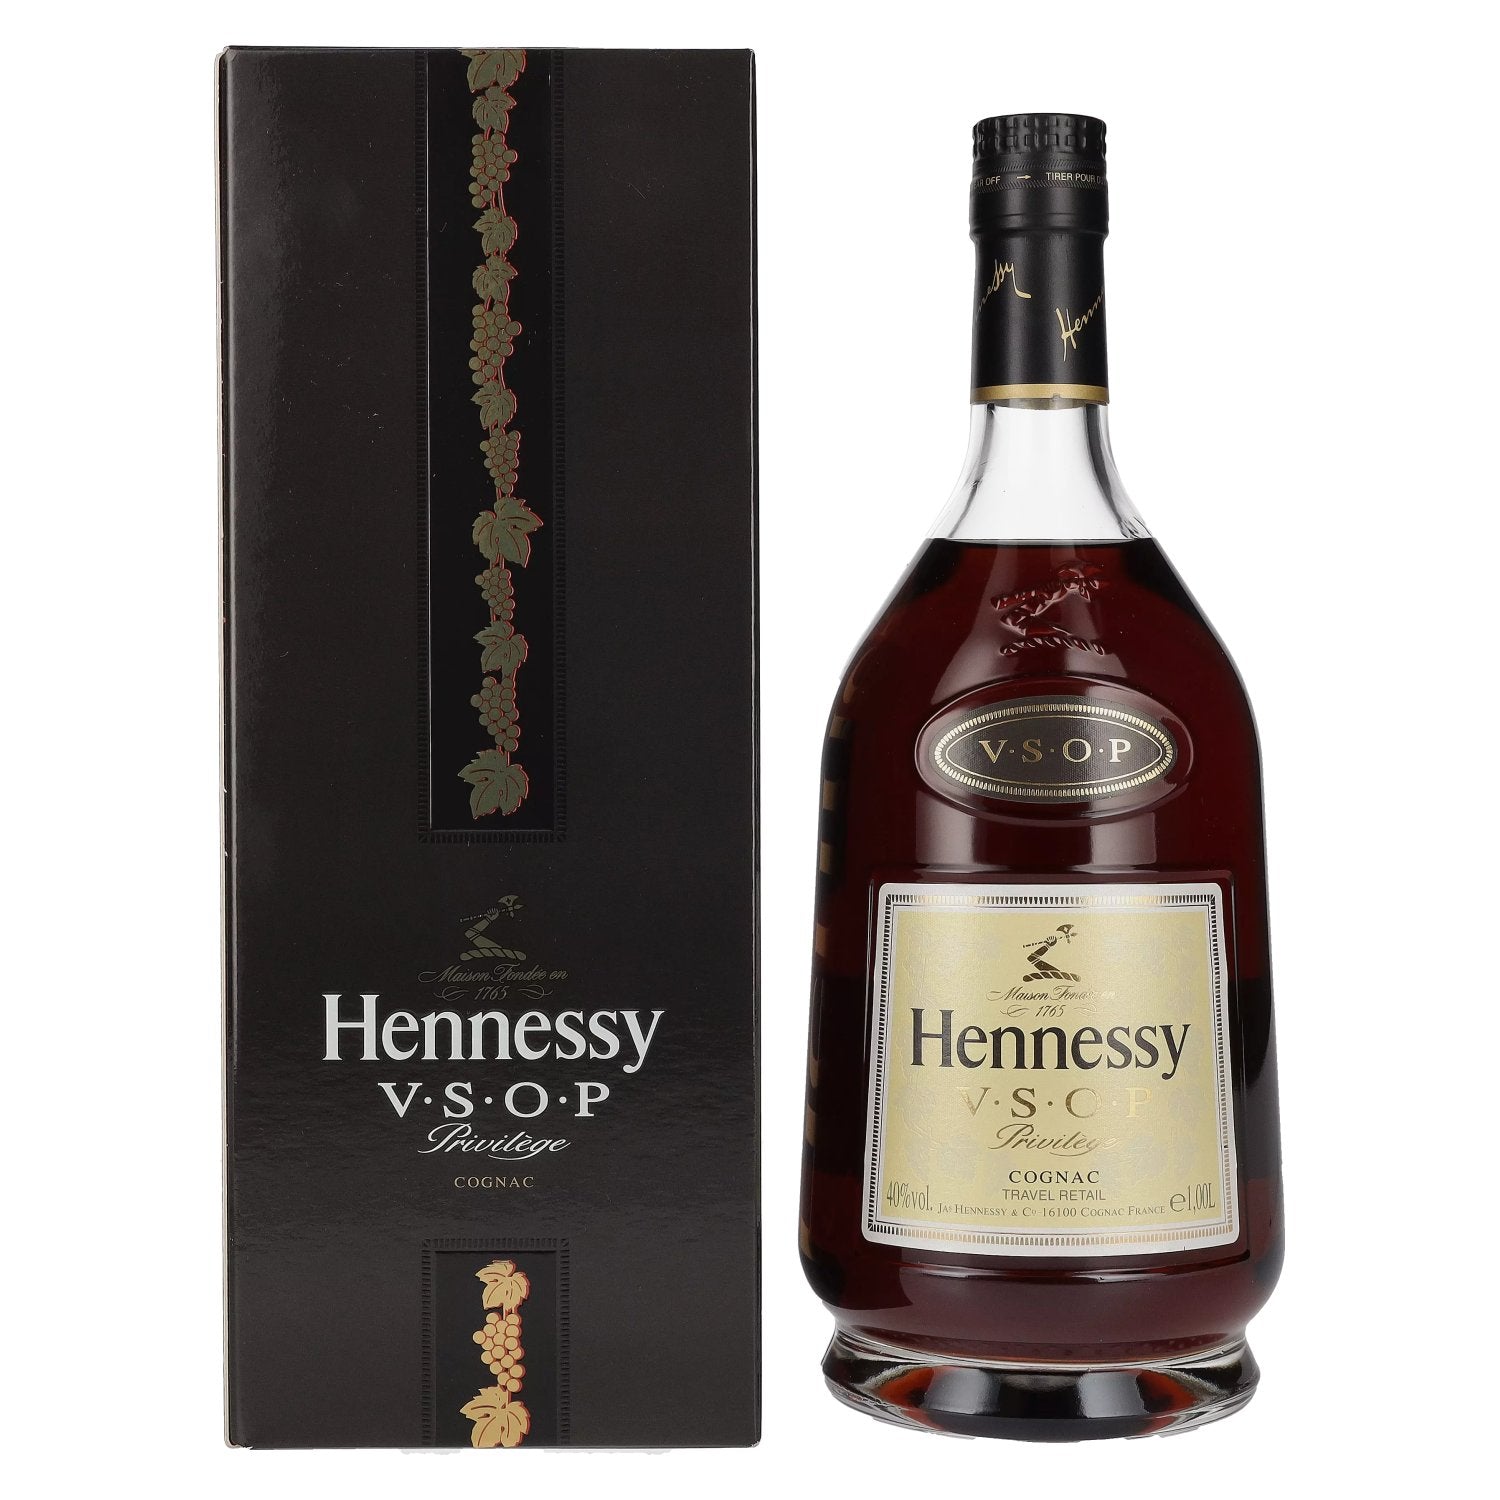 Hennessy V.S.O.P Privilege Cognac 40% Vol. 1l in Giftbox